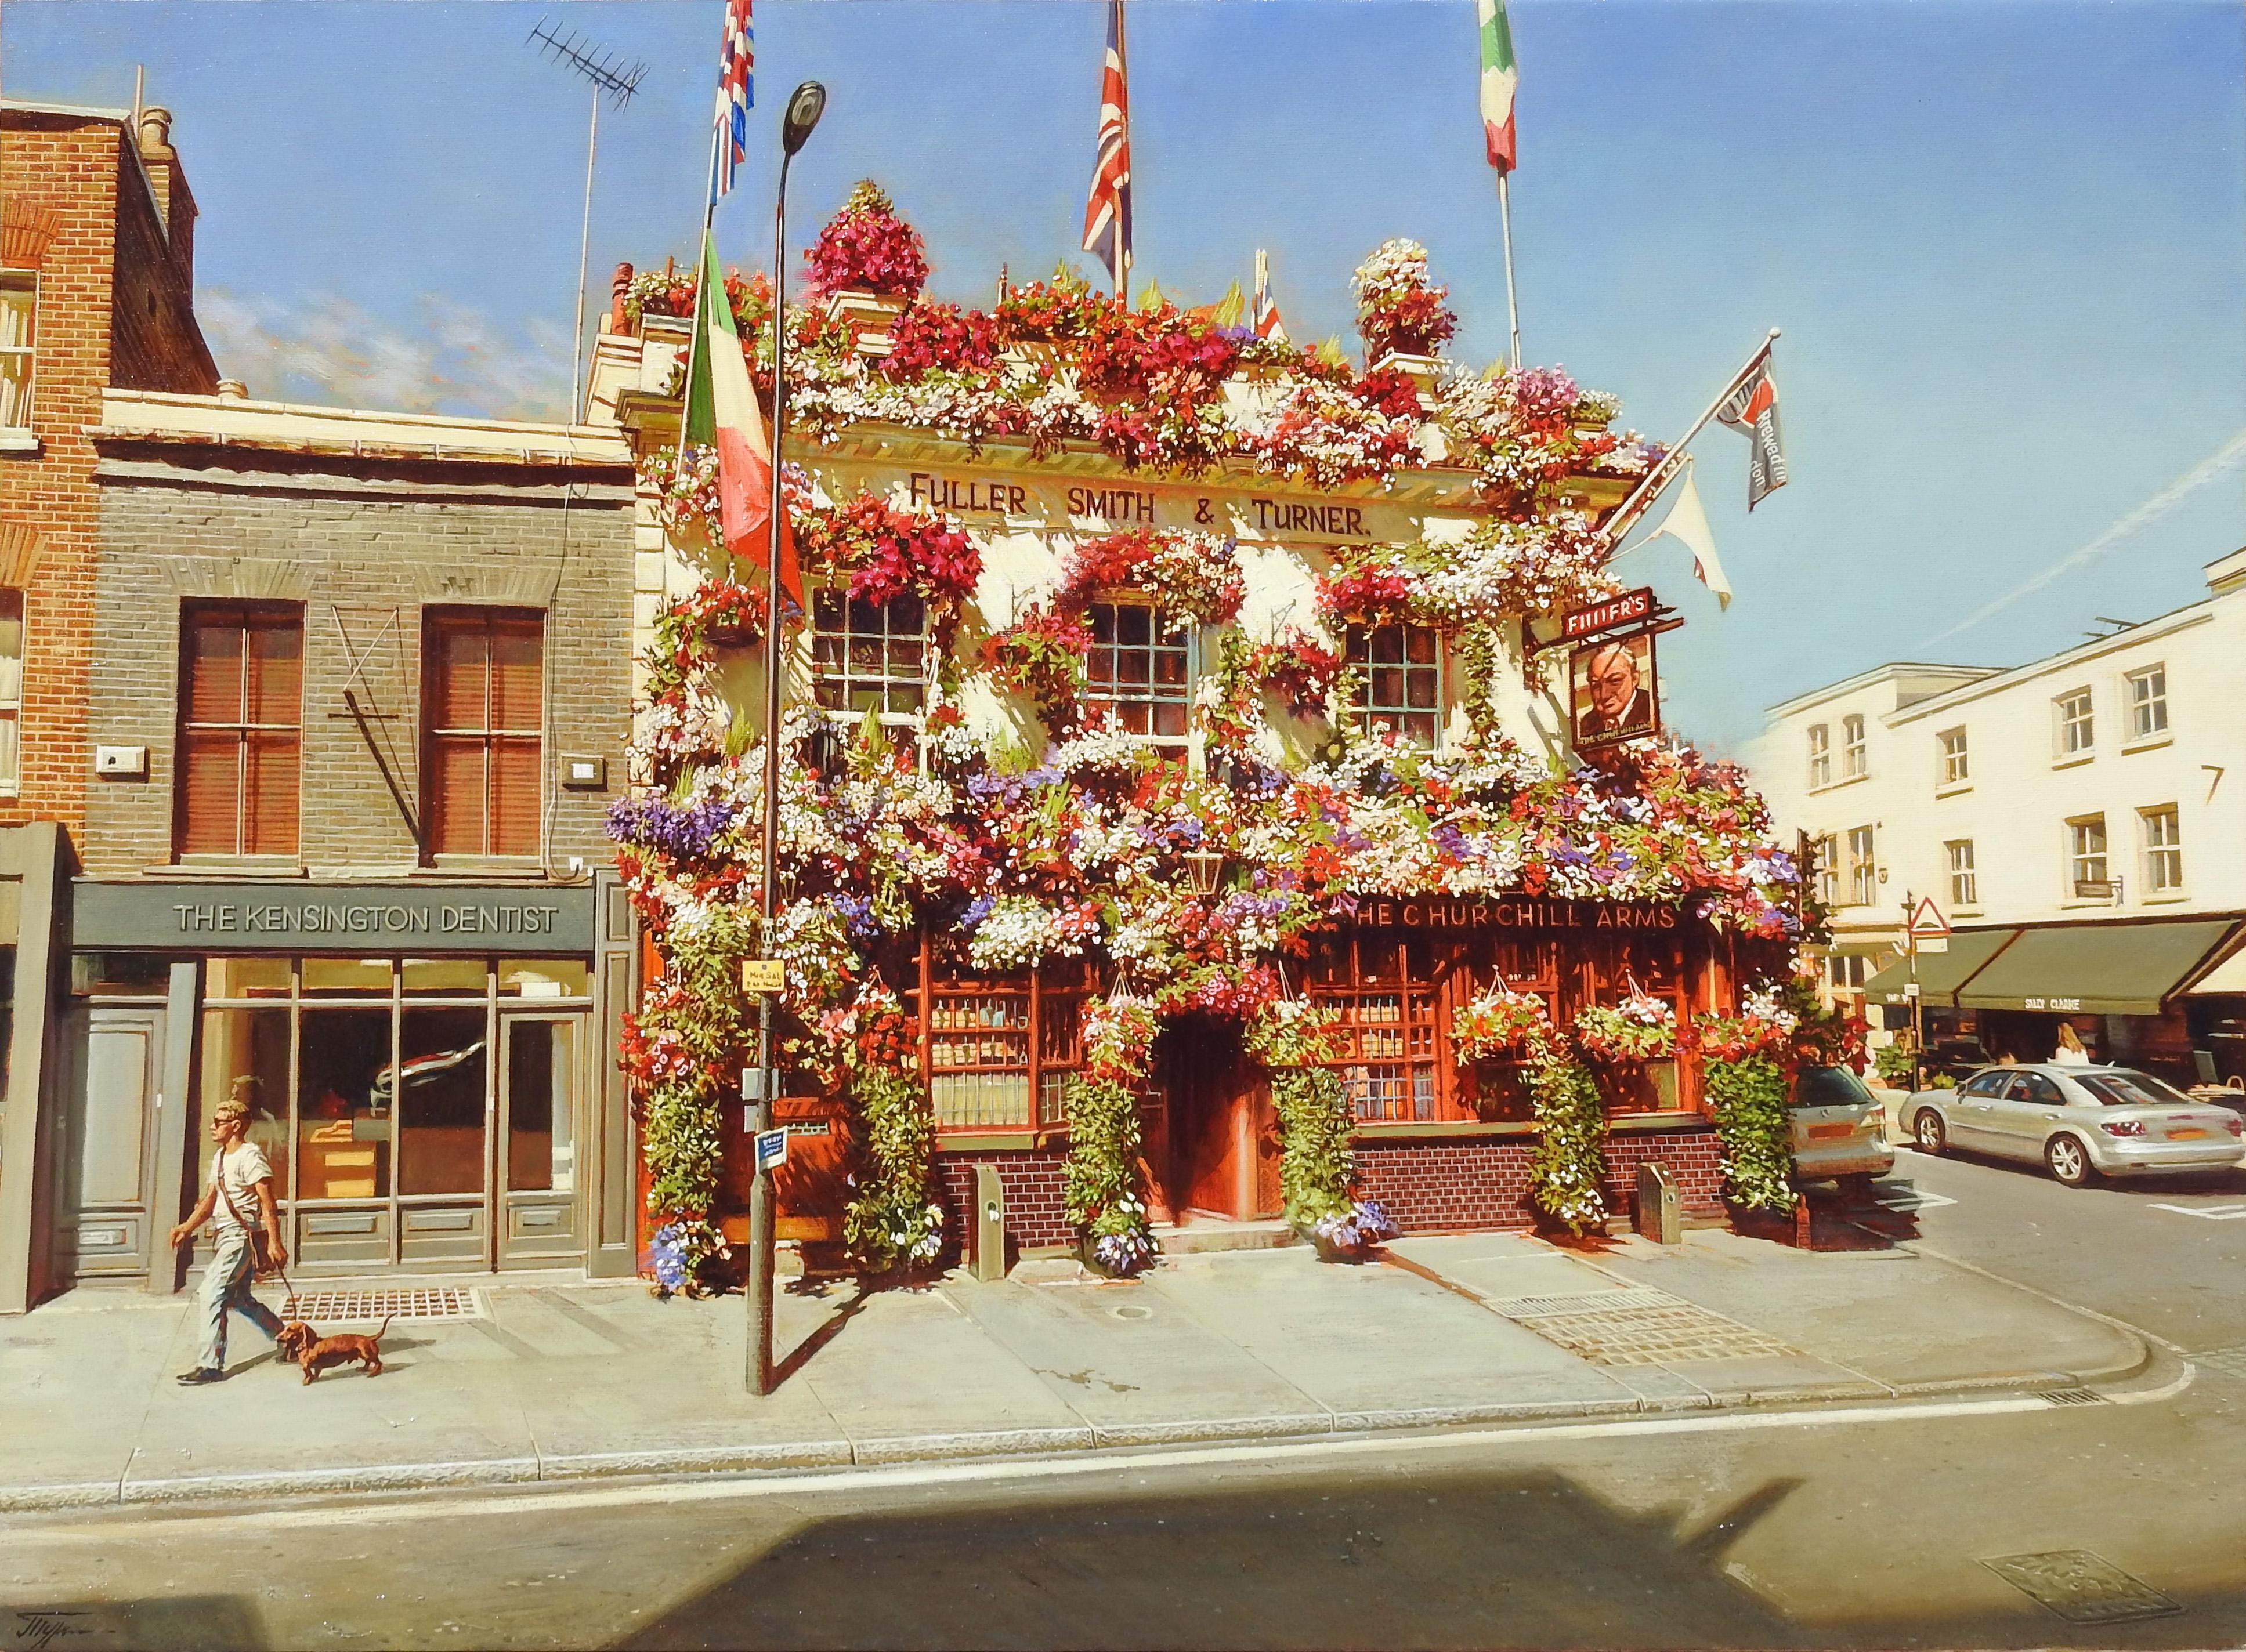 Oleg Turchins "Churchill Arms, Pub" ist ein Ölgemälde auf Leinwand mit den Maßen 30" x 40". Das Gemälde ist eine wunderschöne fotorealistische Darstellung eines berühmten Pubs in Notting Hill, Kingsington, London. Das mit roten, lila und weißen